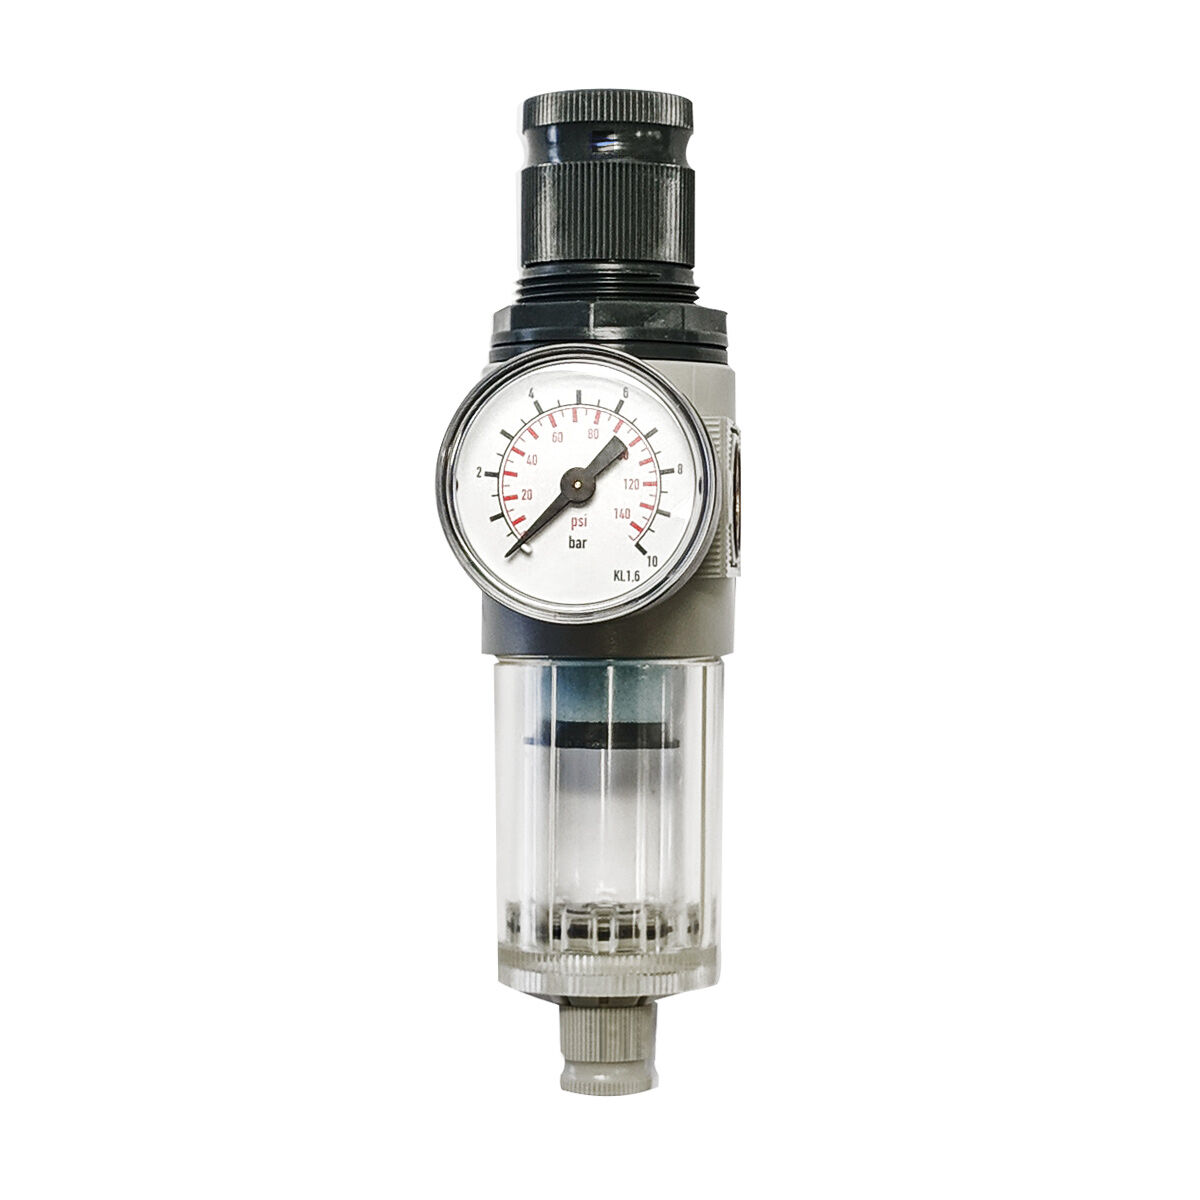 Filtro riduttore di pressione Regolatore di pressione FDM 1/4 0-10 bar D225027 G225027 DGKD225027